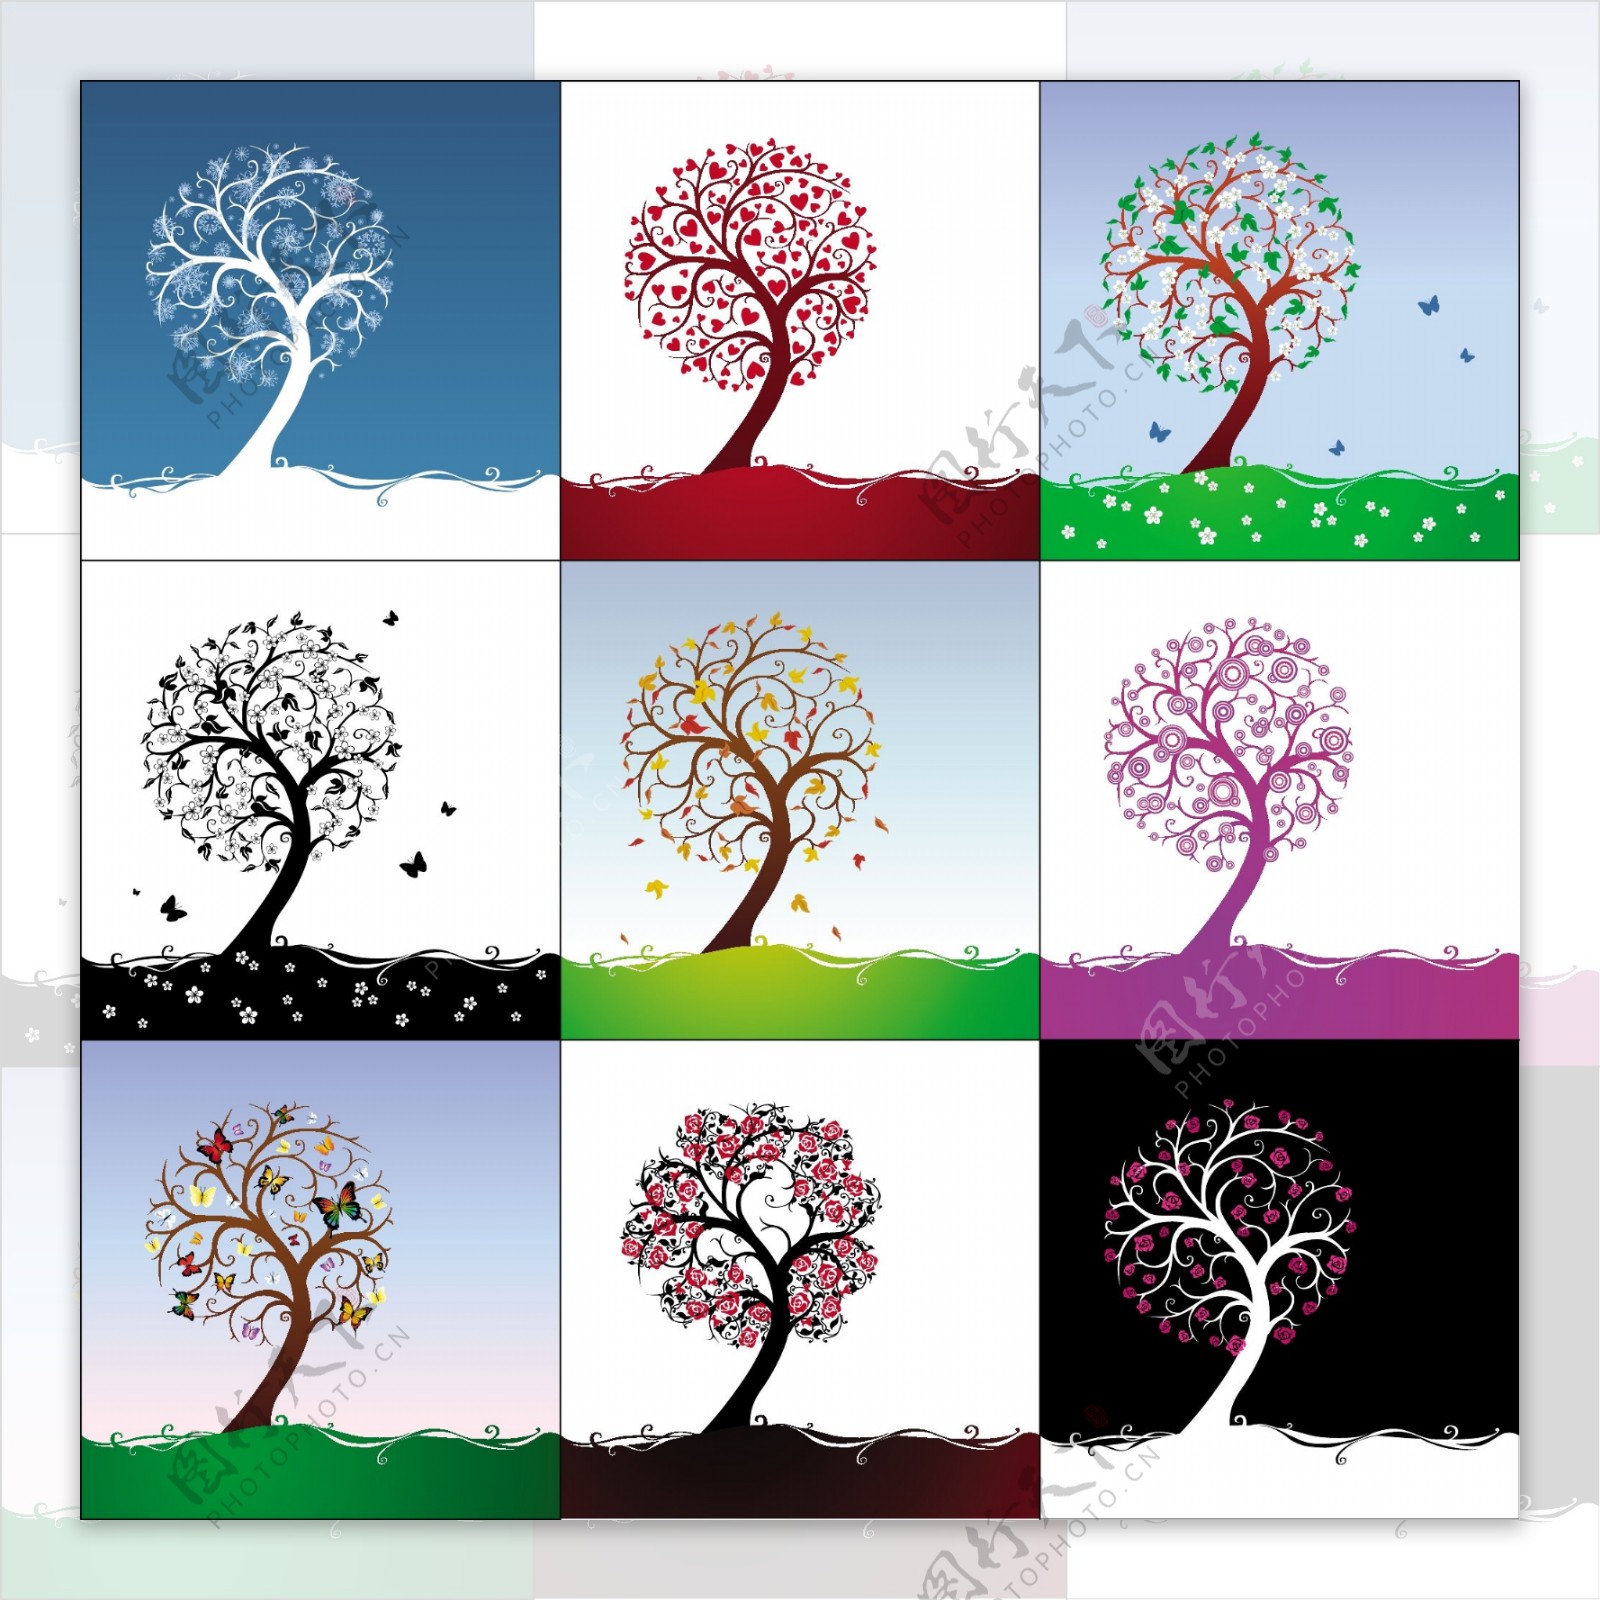 一组精美的不同色调和季节的抽象树矢量素材